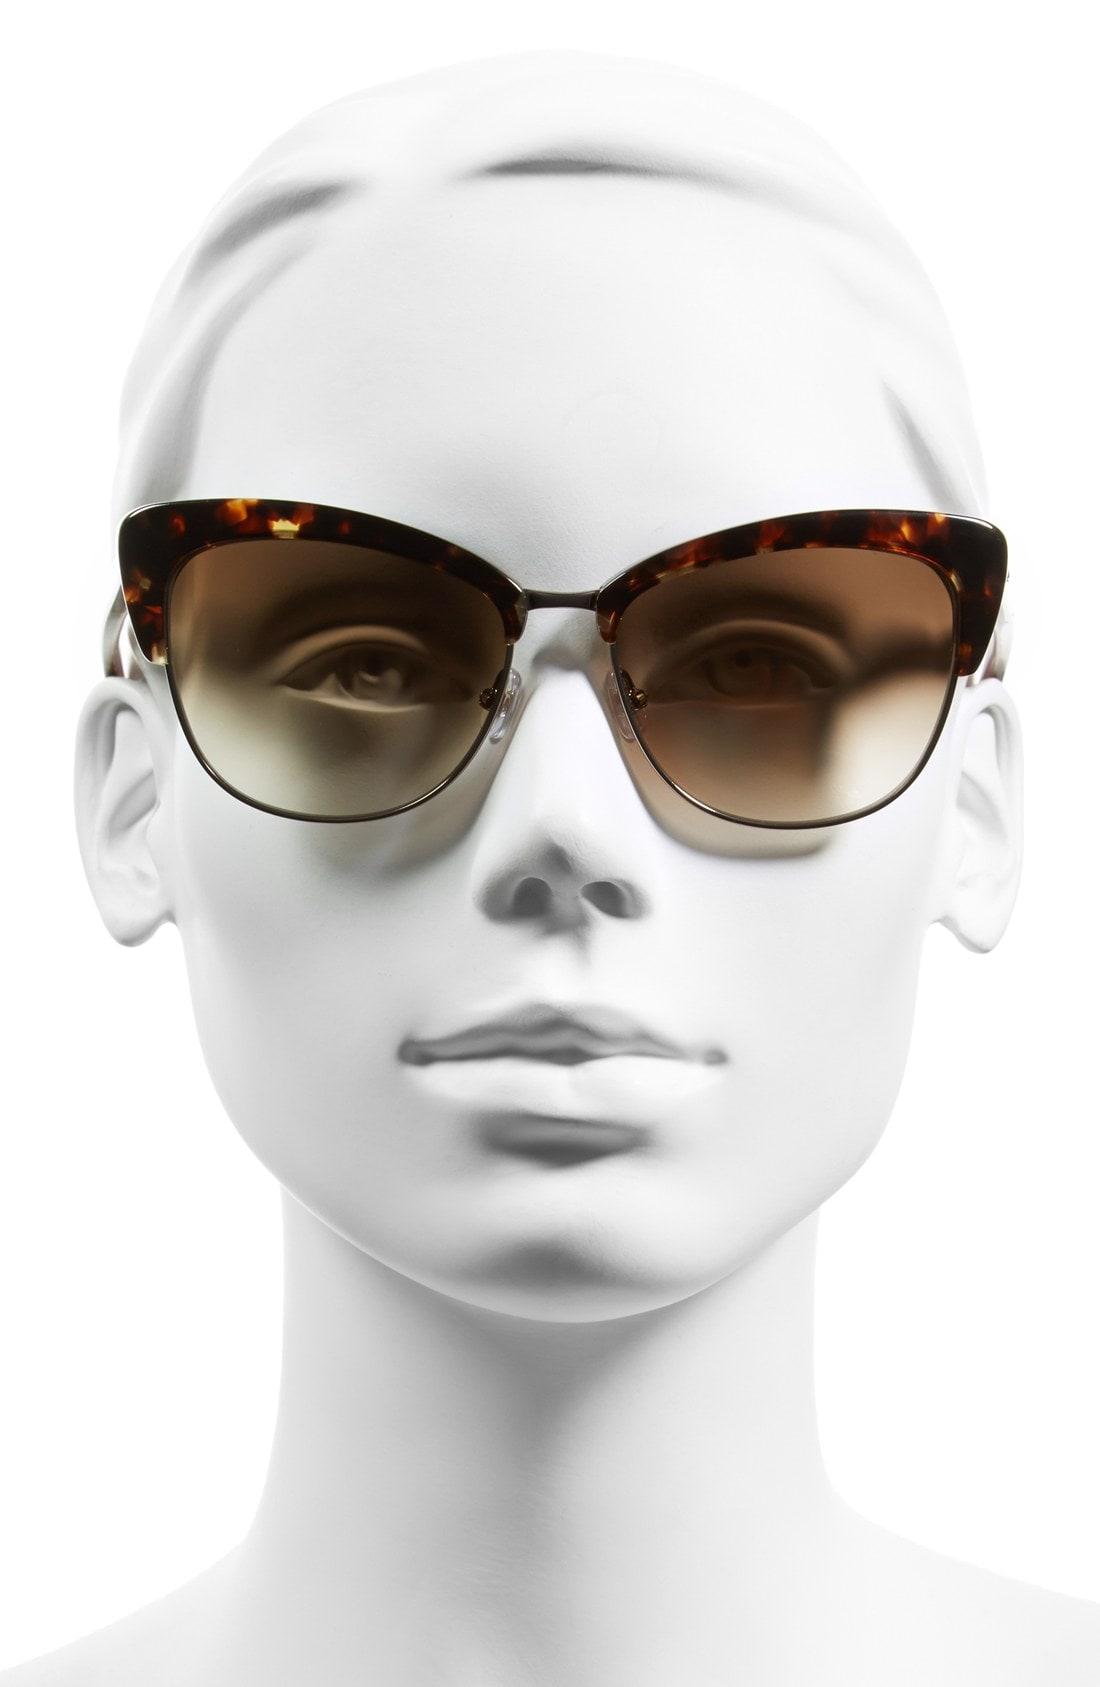 Kate Spade 'genette' 56mm Cat Eye Sunglasses - Tortoise/ Pink | ModeSens